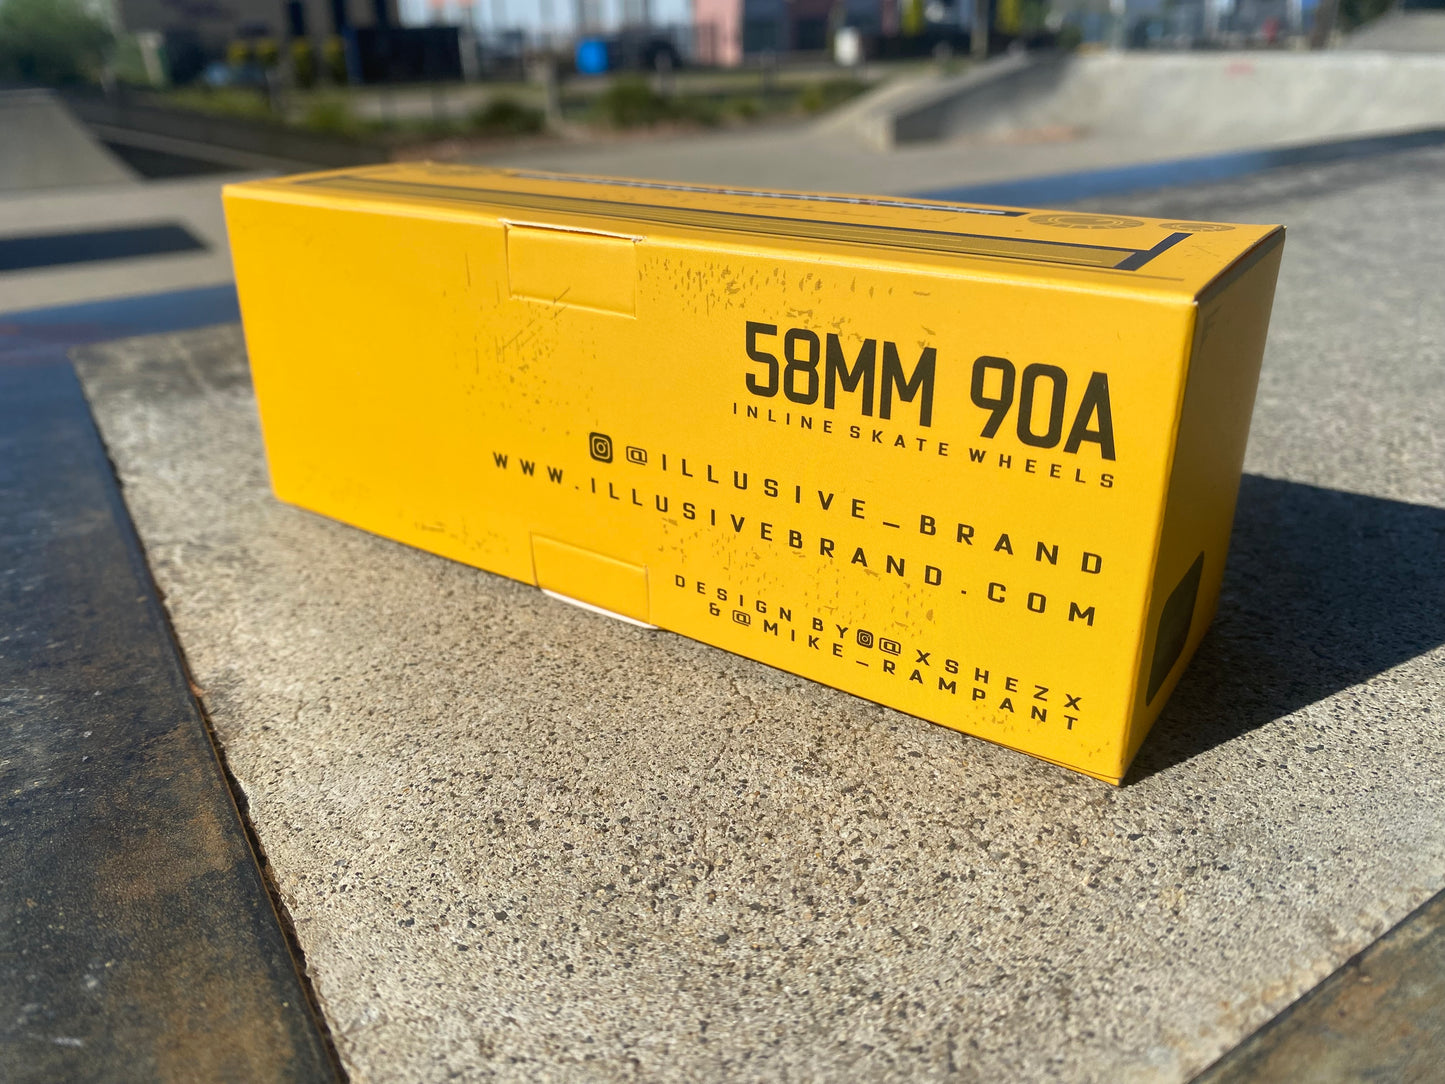 58MM 90A BOOMBOX WHEEL